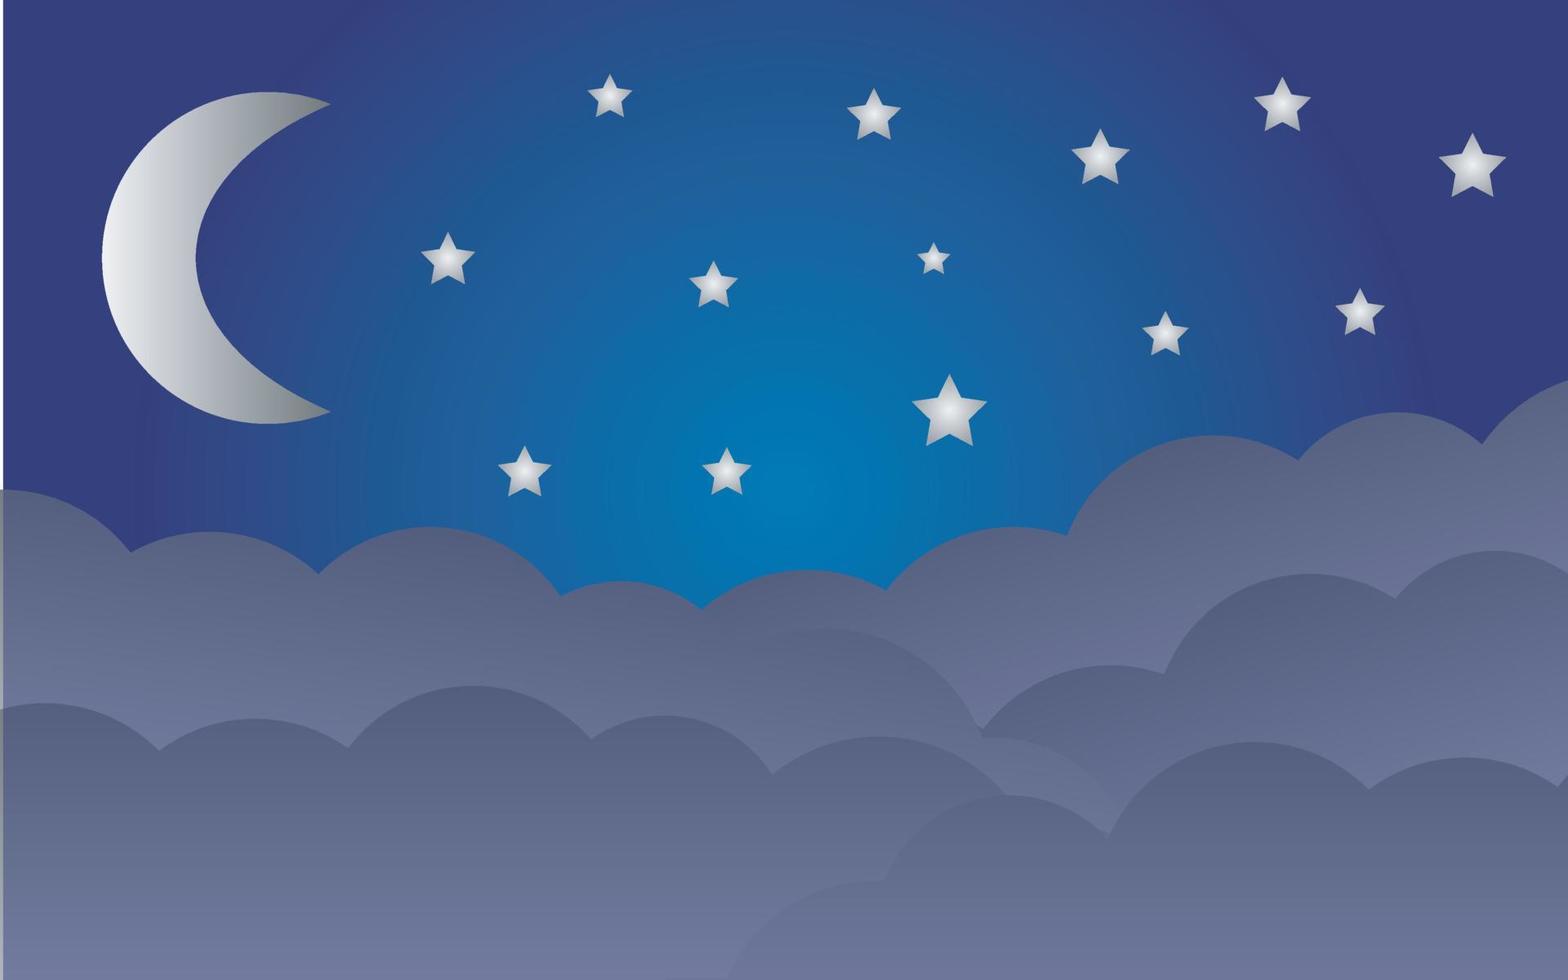 nacht lucht donker blauw achtergrond met halve maan maan sterren en wolken vector